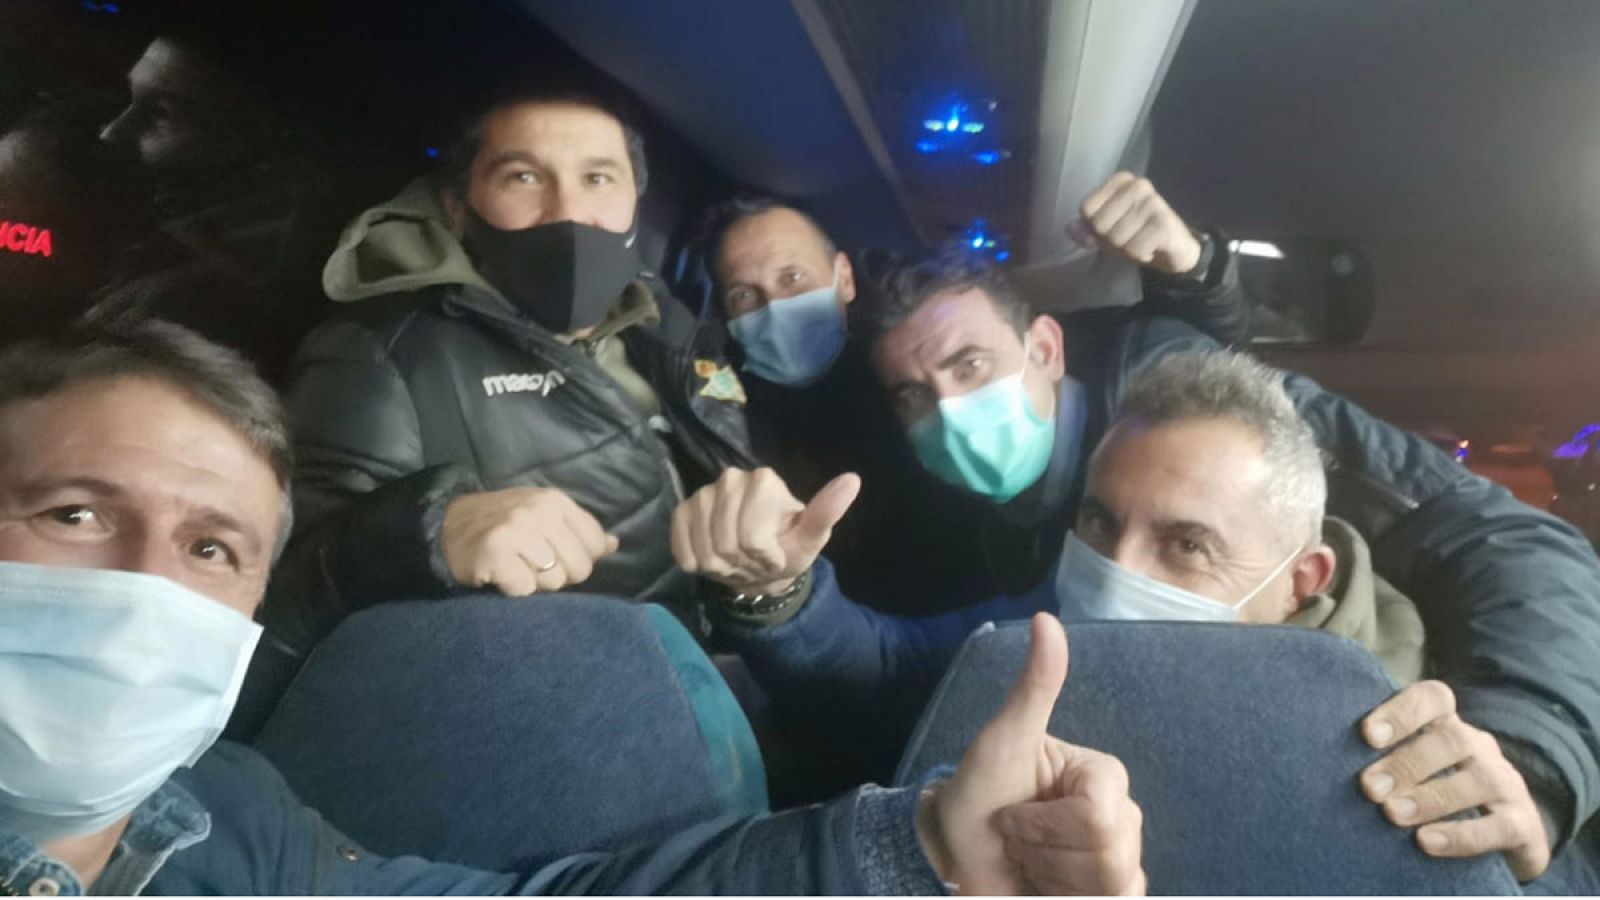 Los españoles evacuados de Wuhan: "Después de más de 30 horas por fin hemos vuelto a casa"